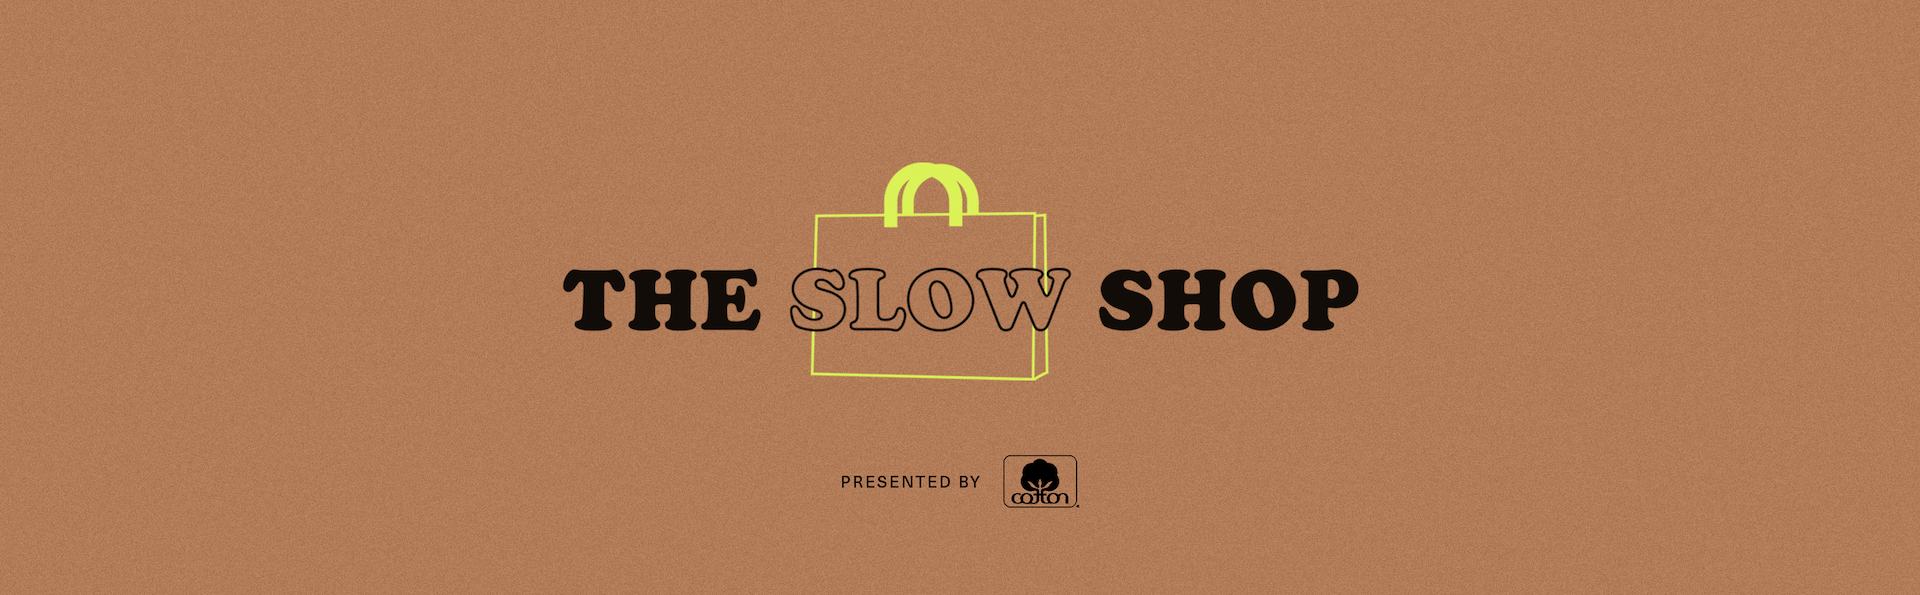 The Slow Shop